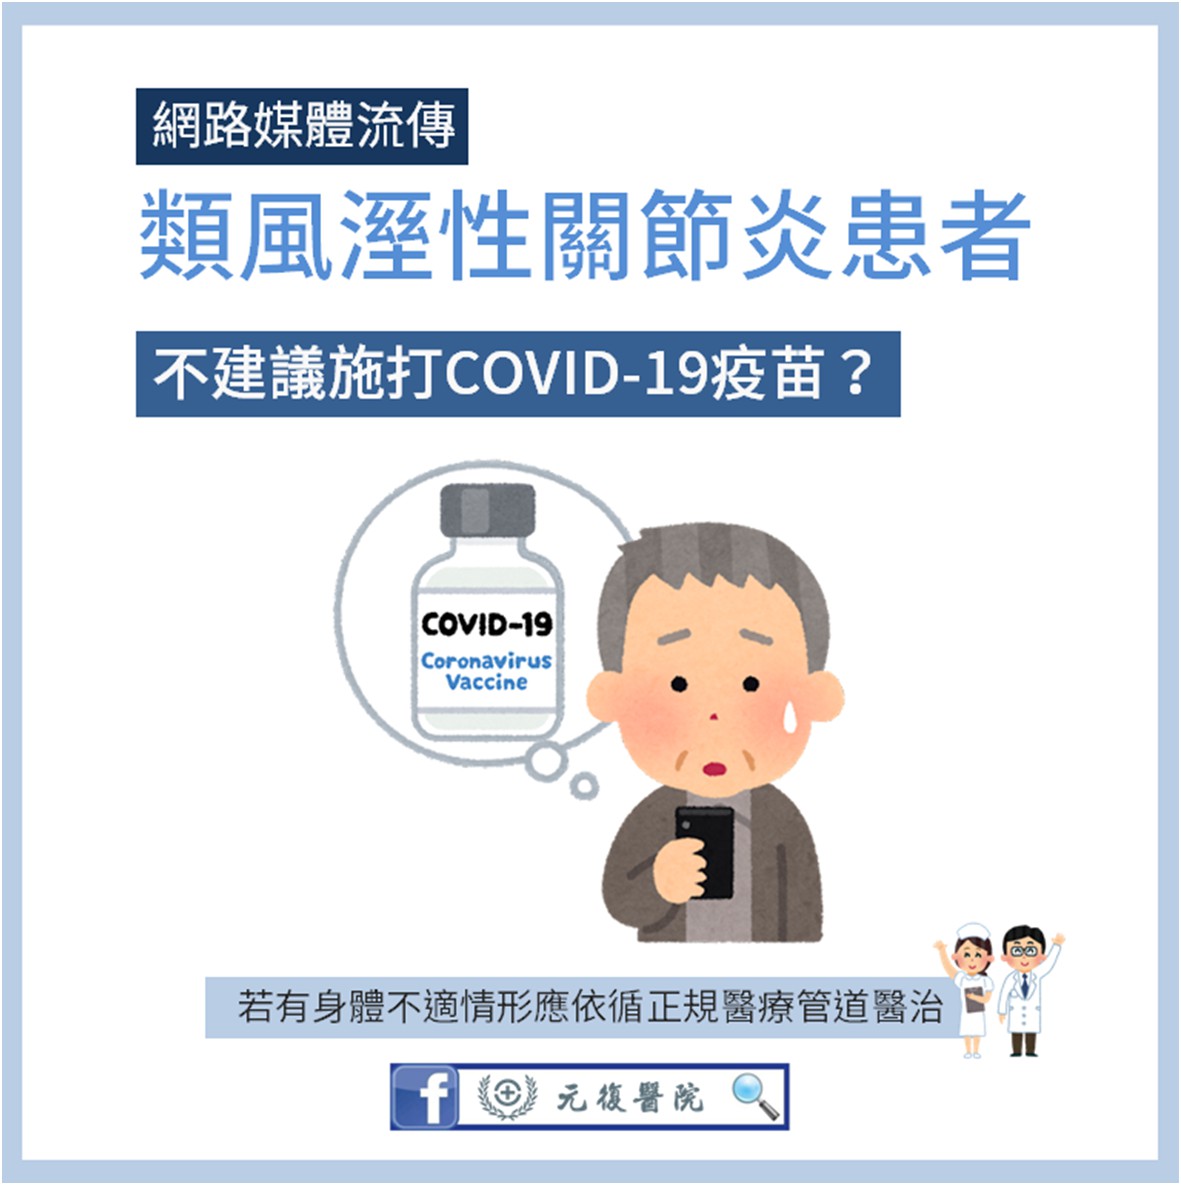 類風溼性關節炎患者不建議施打COVID-19疫苗嗎？